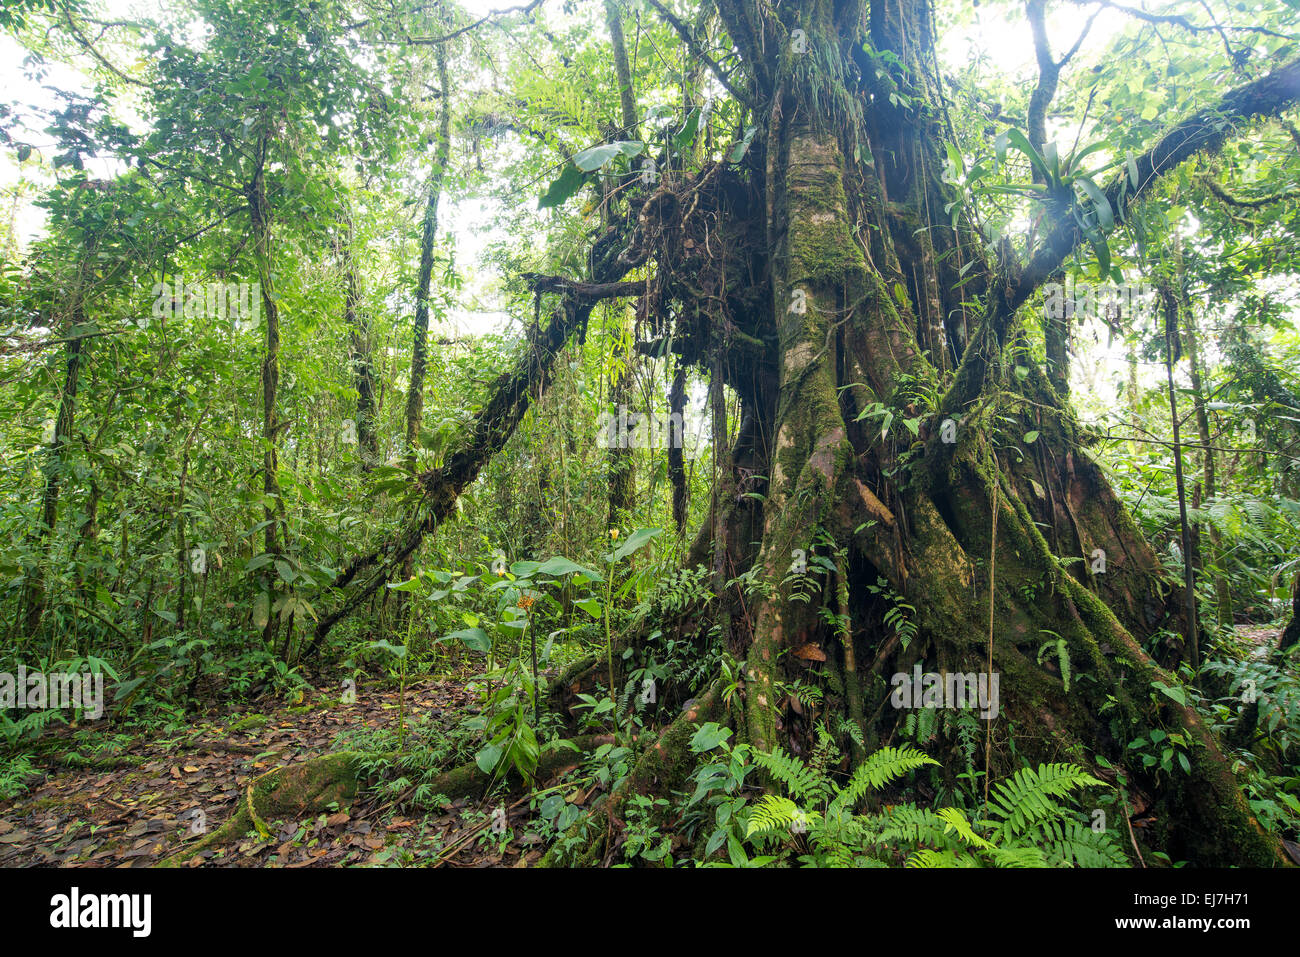 Costa Rica Cloud Forest, il verde della foresta pluviale inferno verde splendidamente poignant vale la pena proteggere la salute naturale sano turismo viaggi Foto Stock